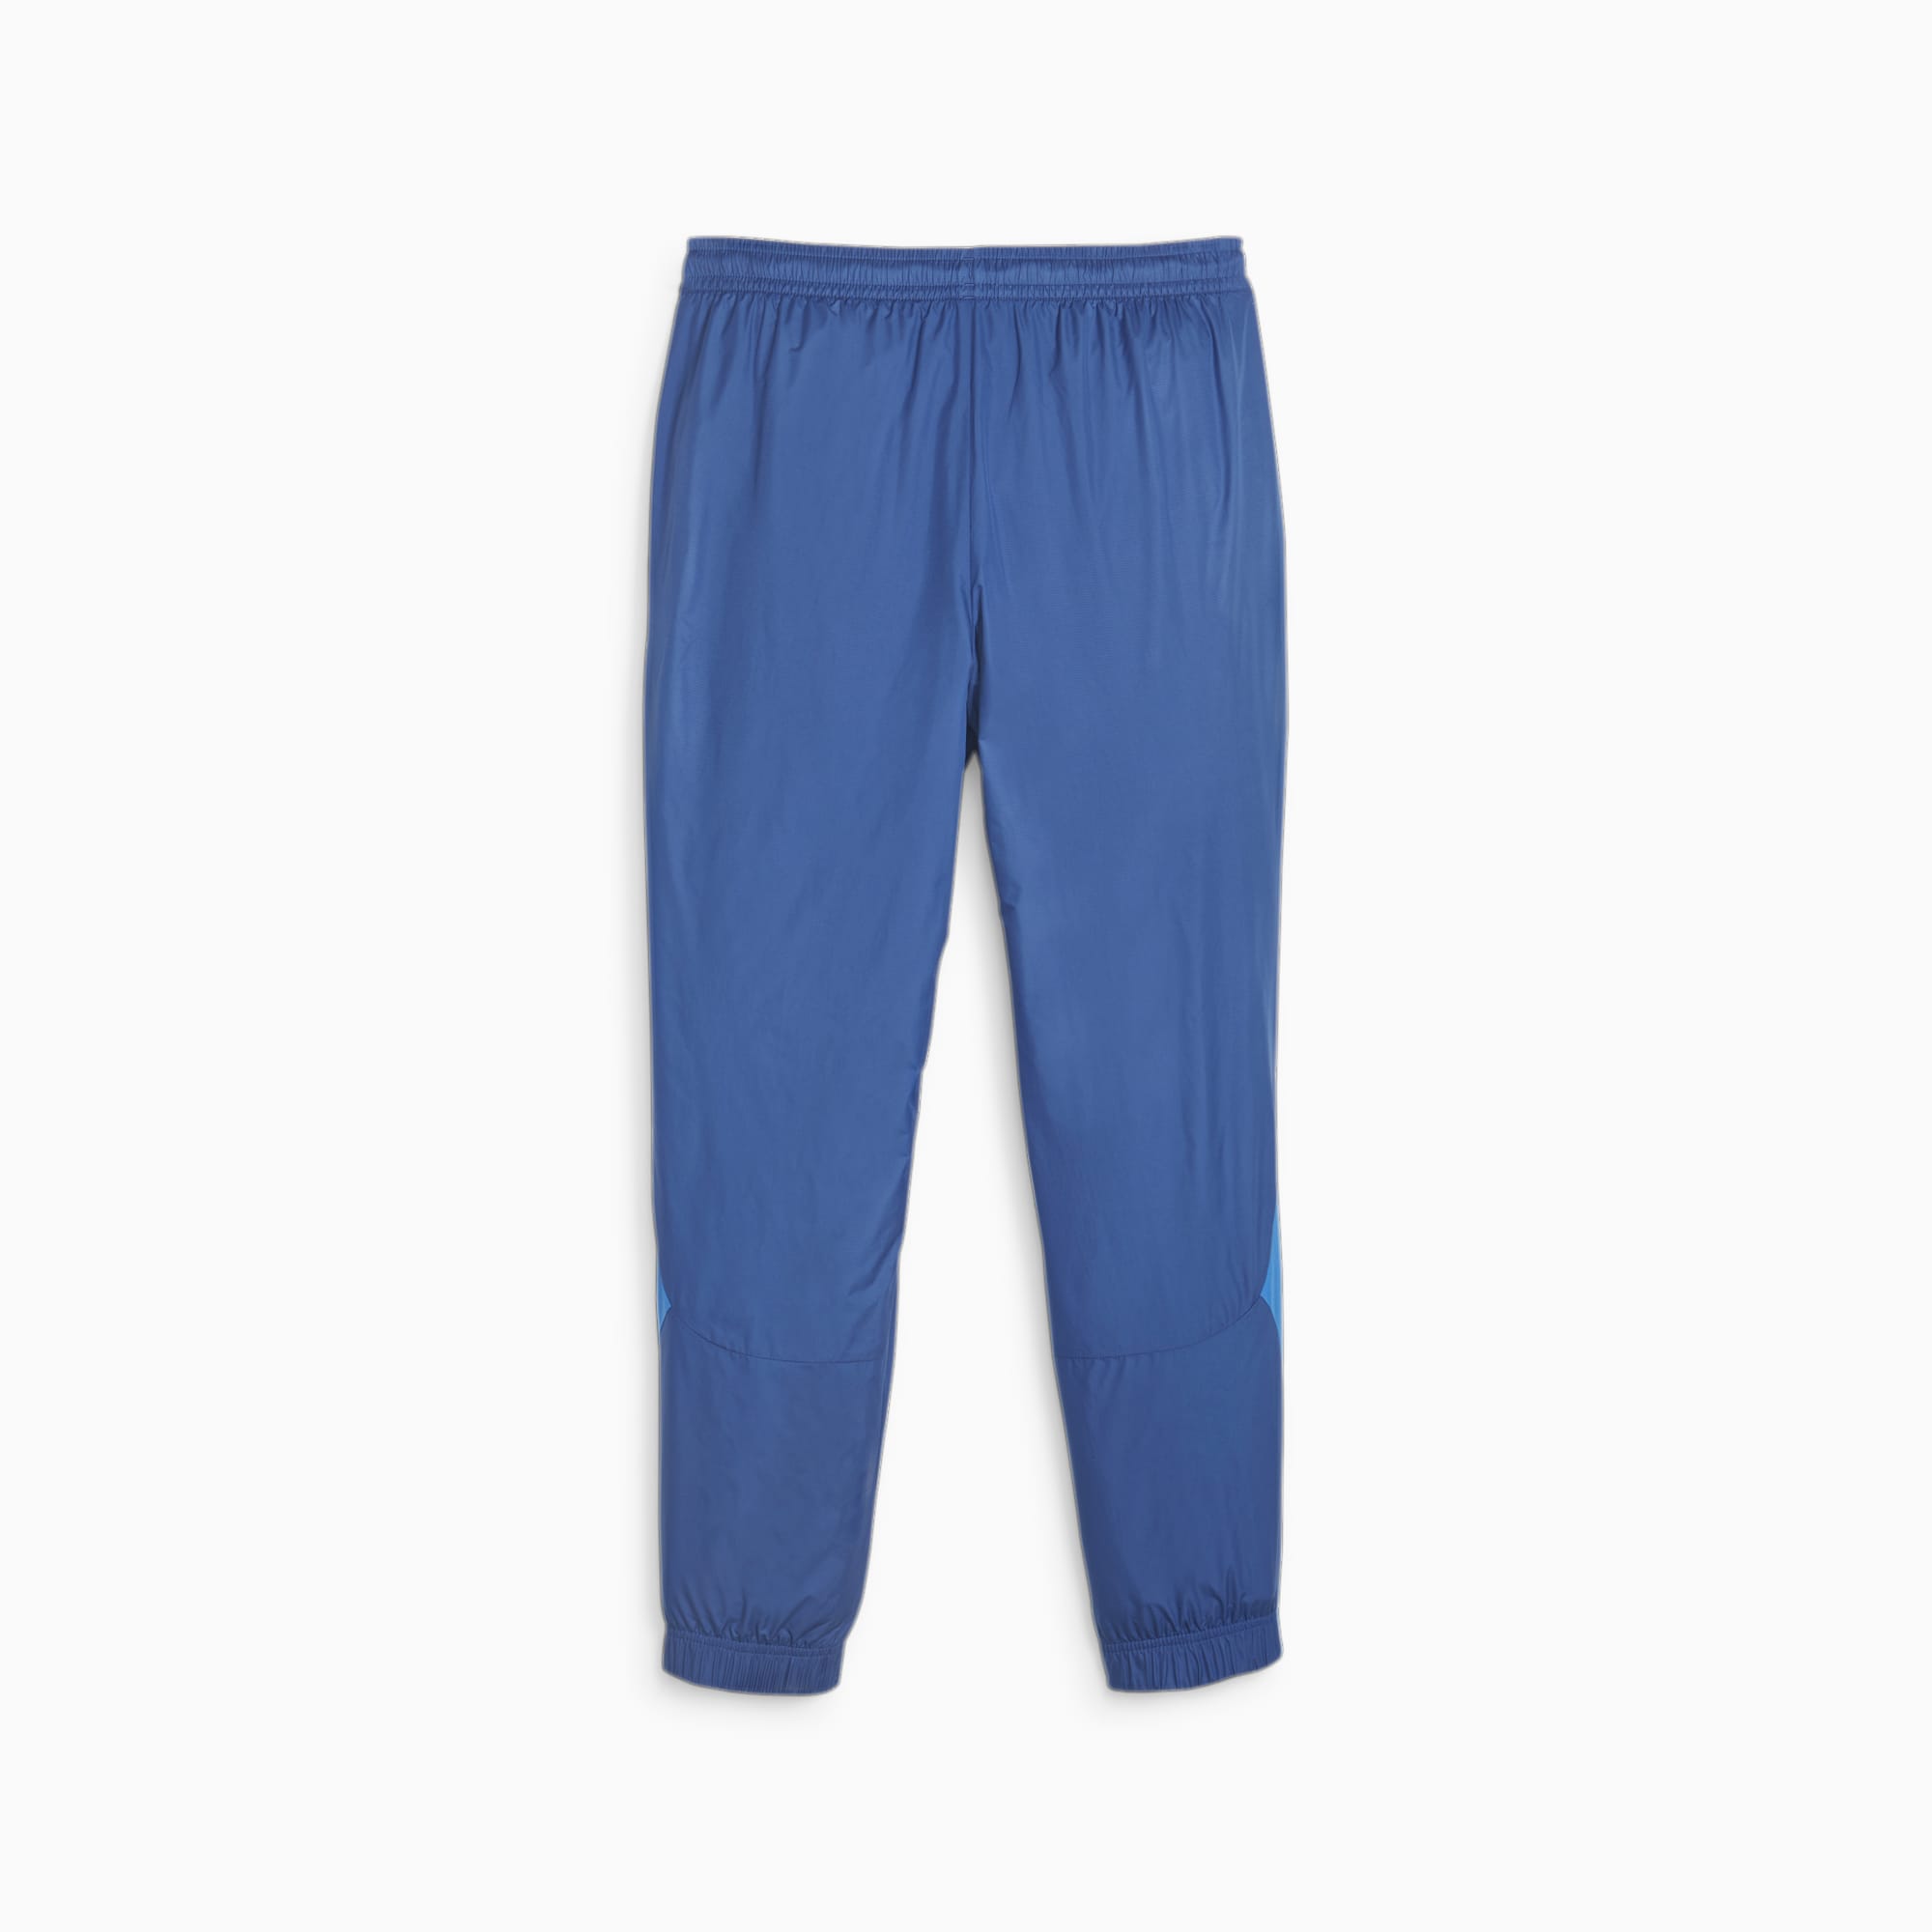 Men's PUMA Olympique De Marseille Prematch Football Pants, Royal Blue, Size XL, Clothing